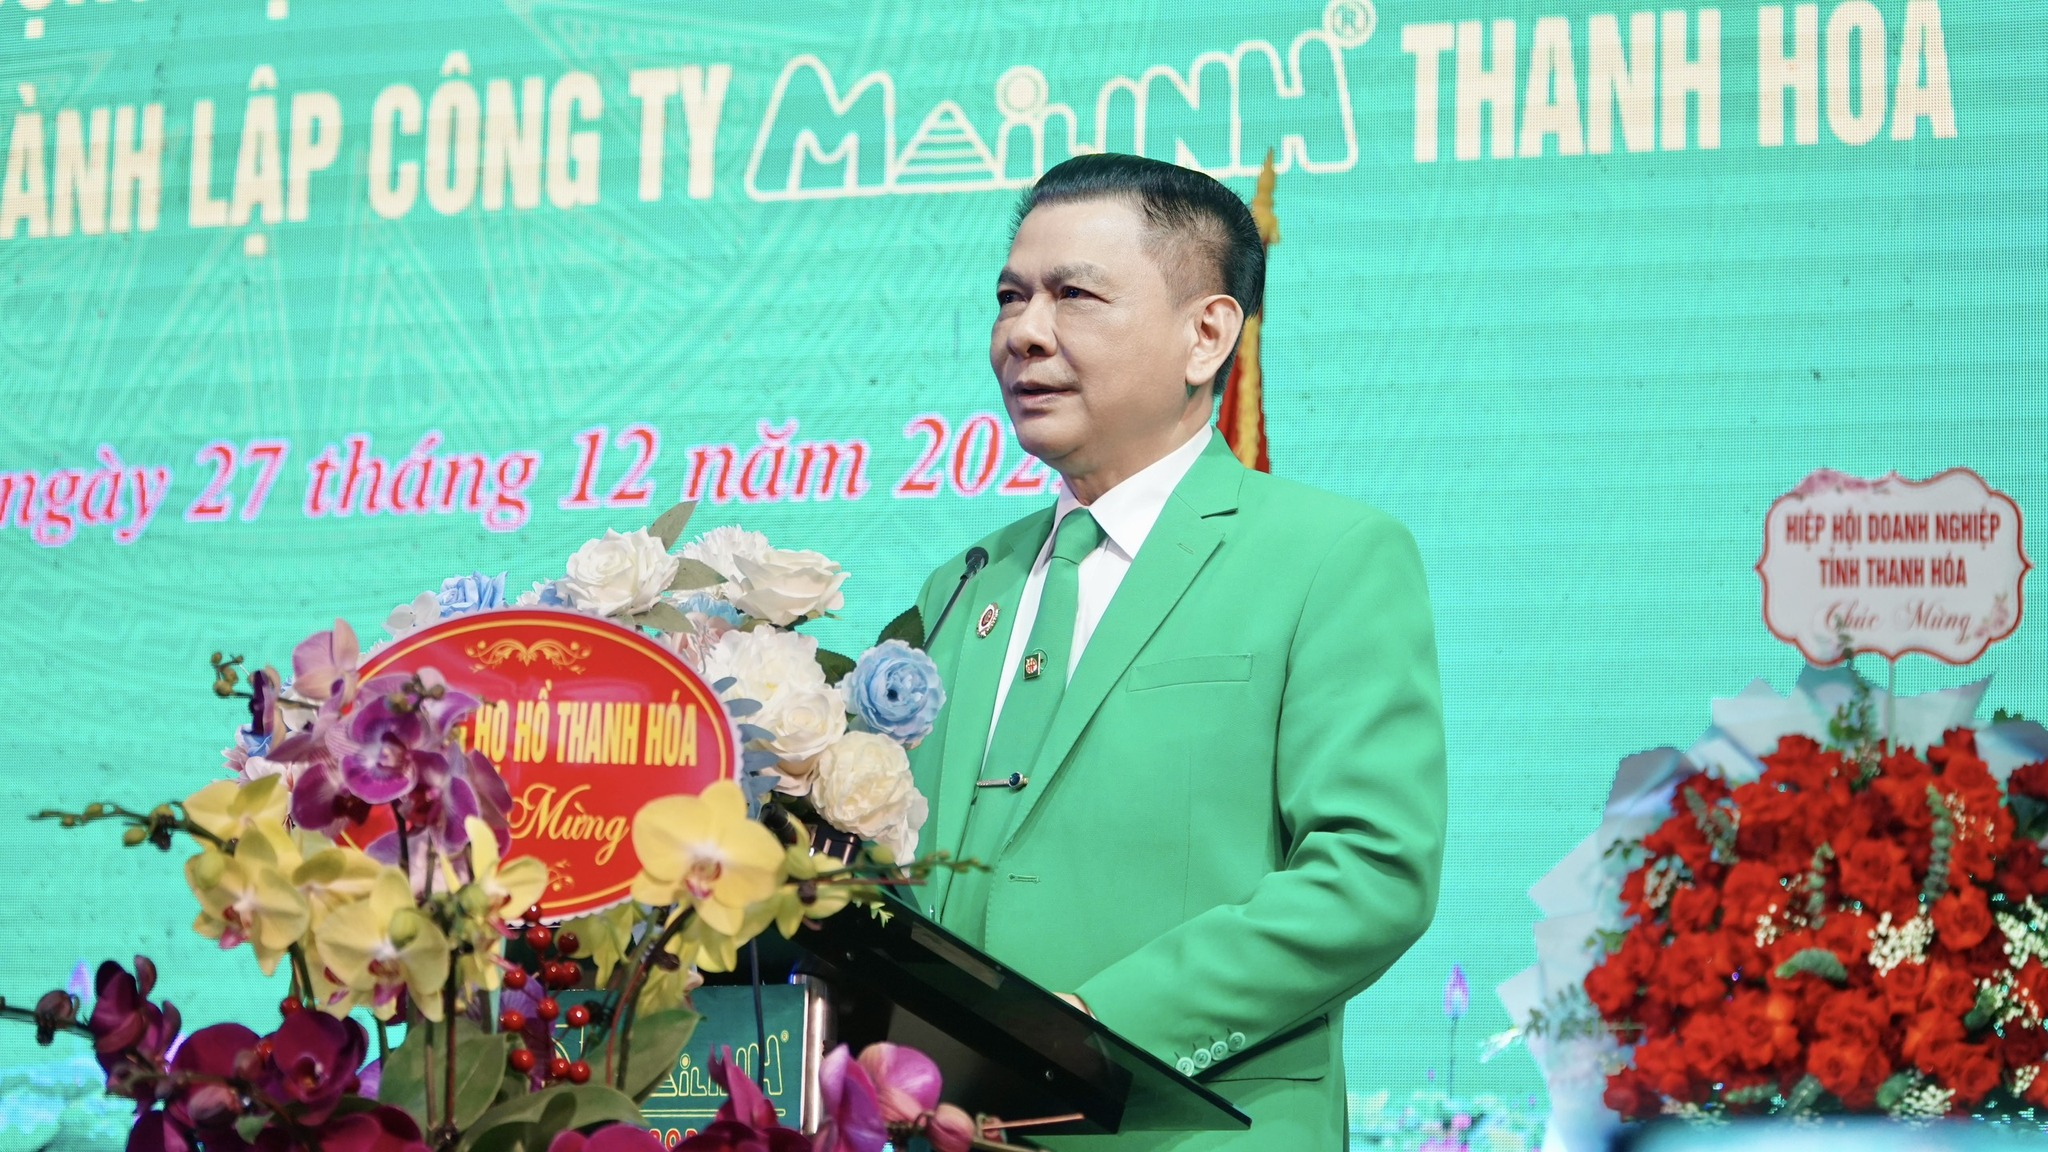 Ông Hồ Huy – Chủ tịch HĐQT, Tổng Giám đốc Tập đoàn Mai Linh phát biểu tại buổi lễ.